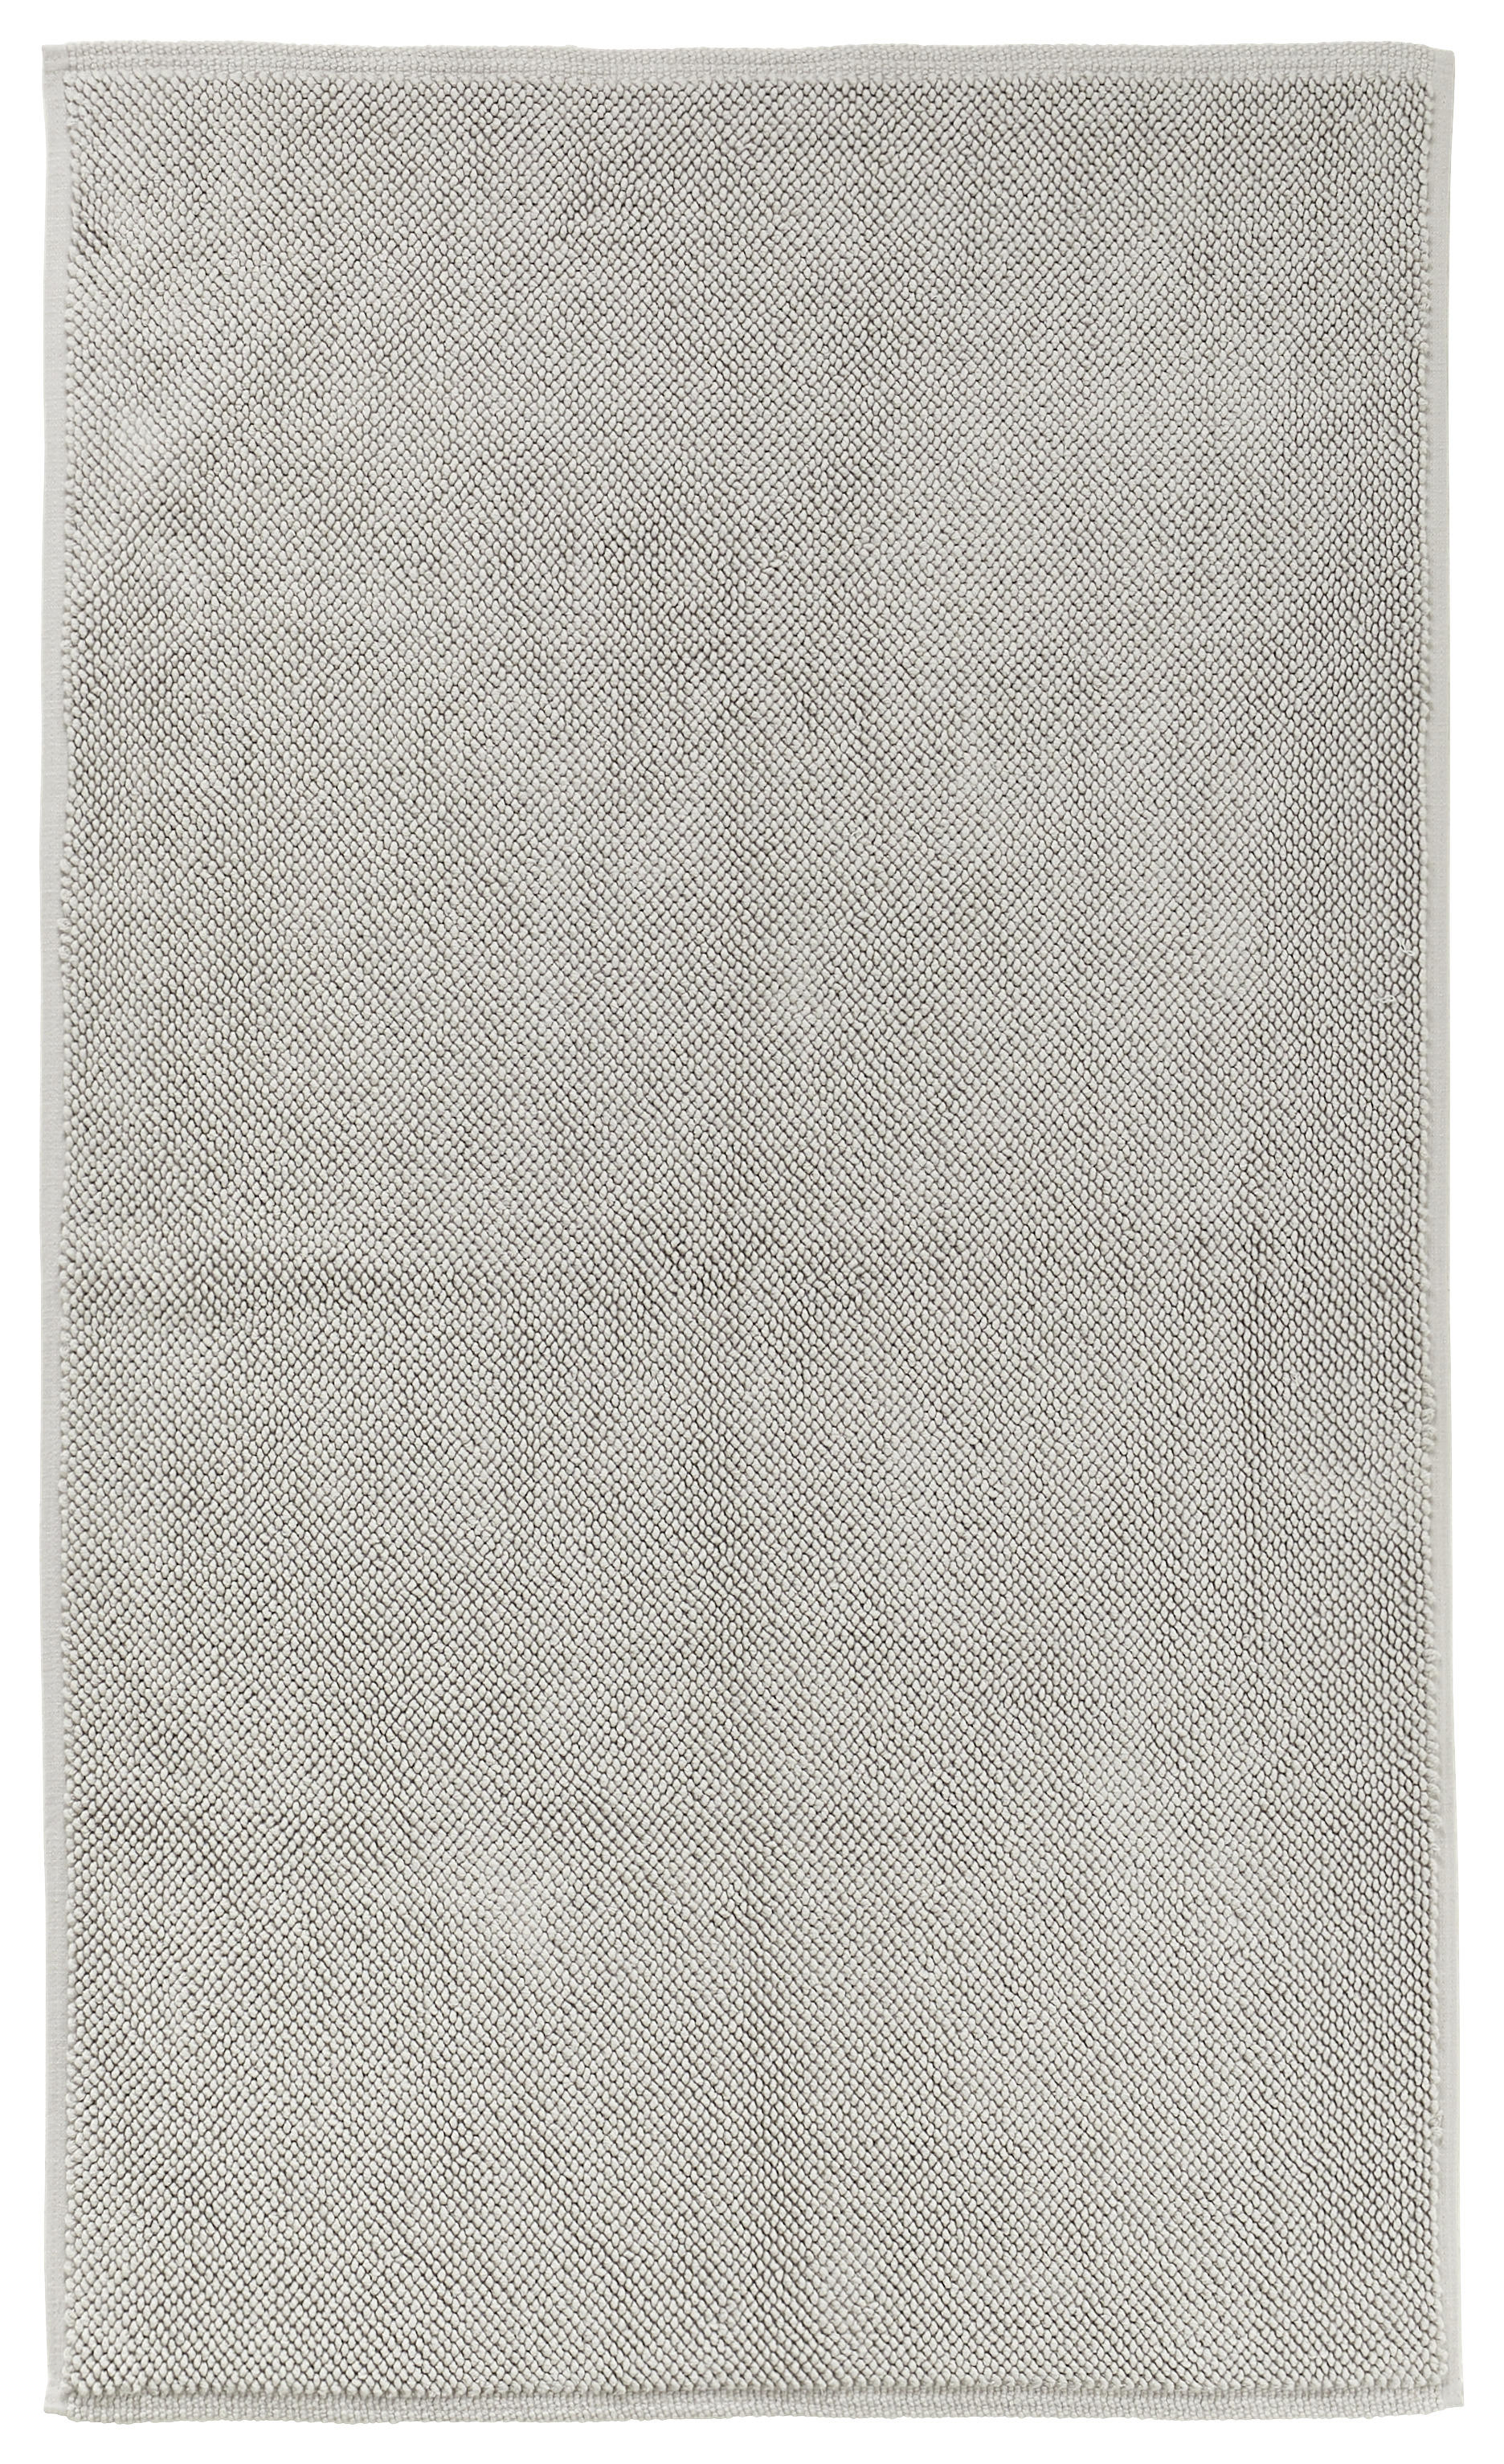 BADEMATTE Rocco 60/100 cm  - Silberfarben, KONVENTIONELL, Textil (60/100cm) - Bio:Vio